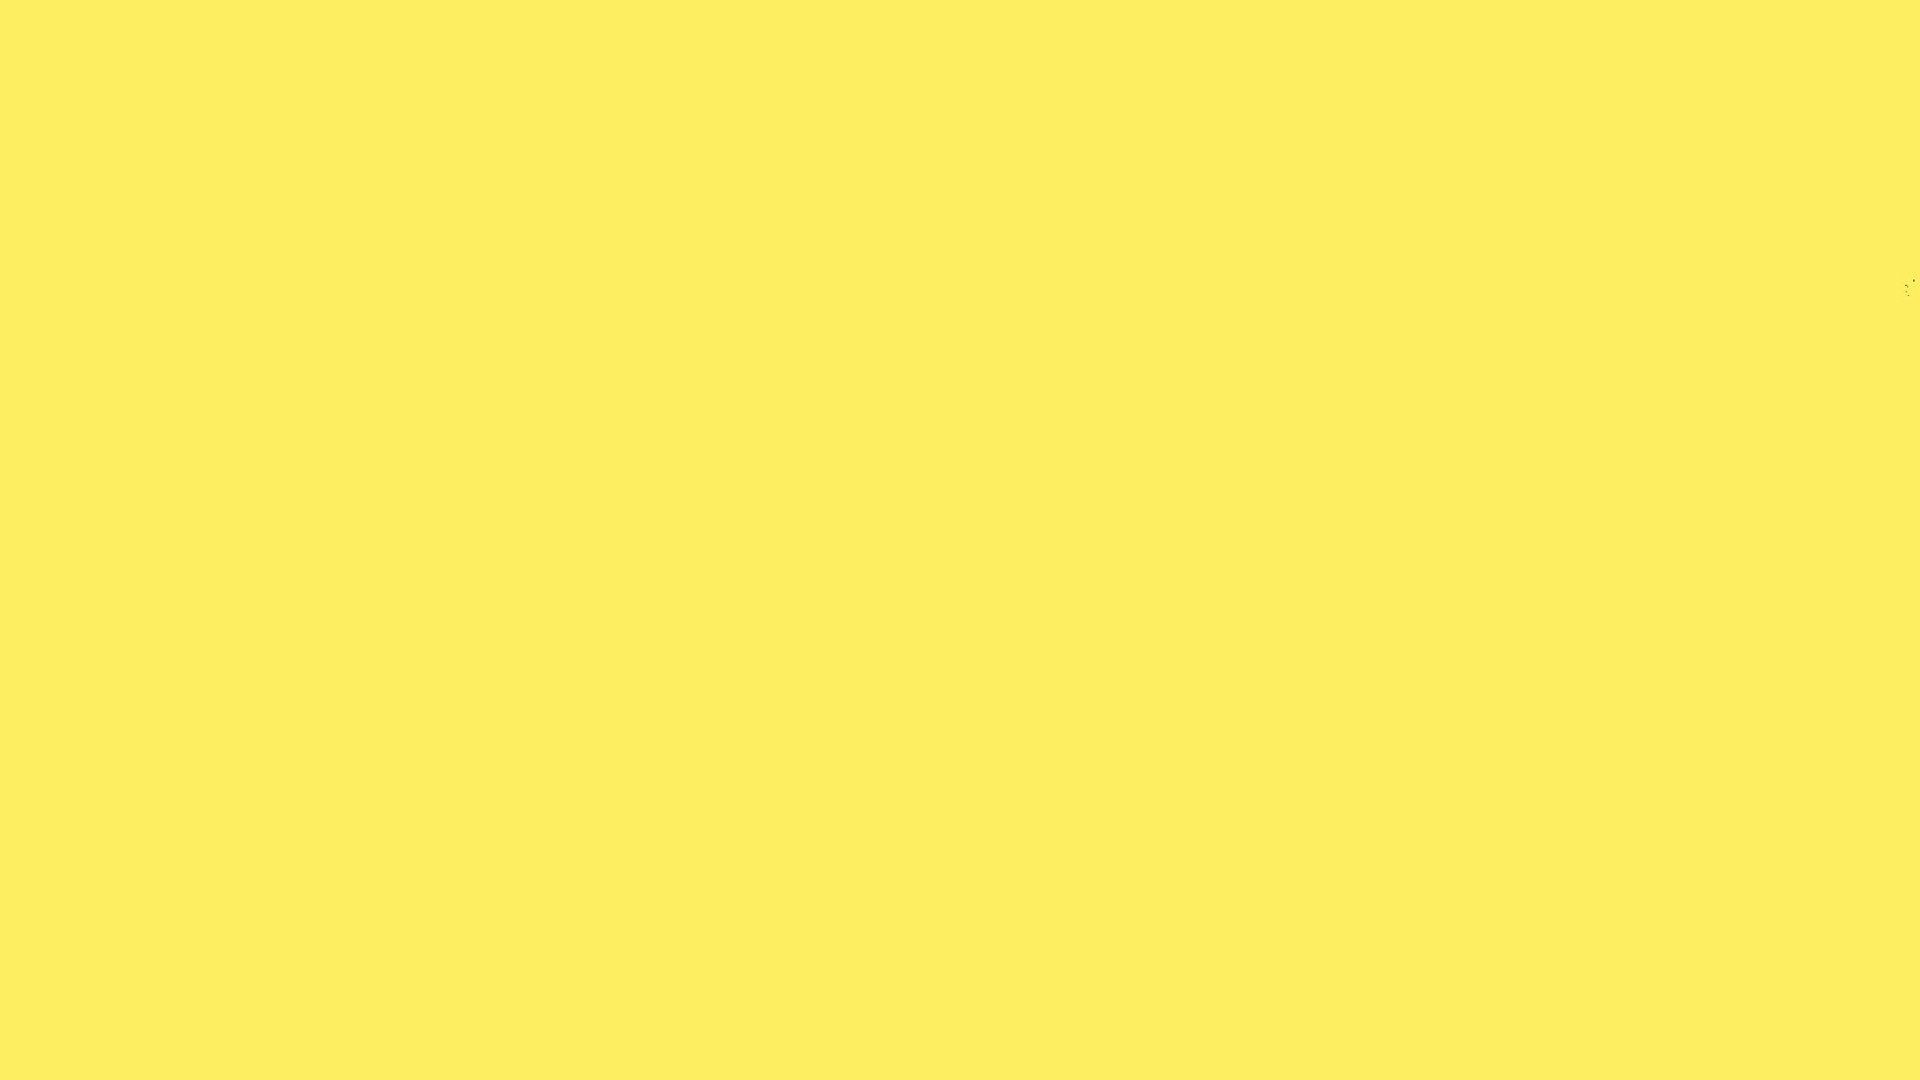 1920x1080 Plain Yellow Desktop Wallpaper | Best Wallpaper HD .